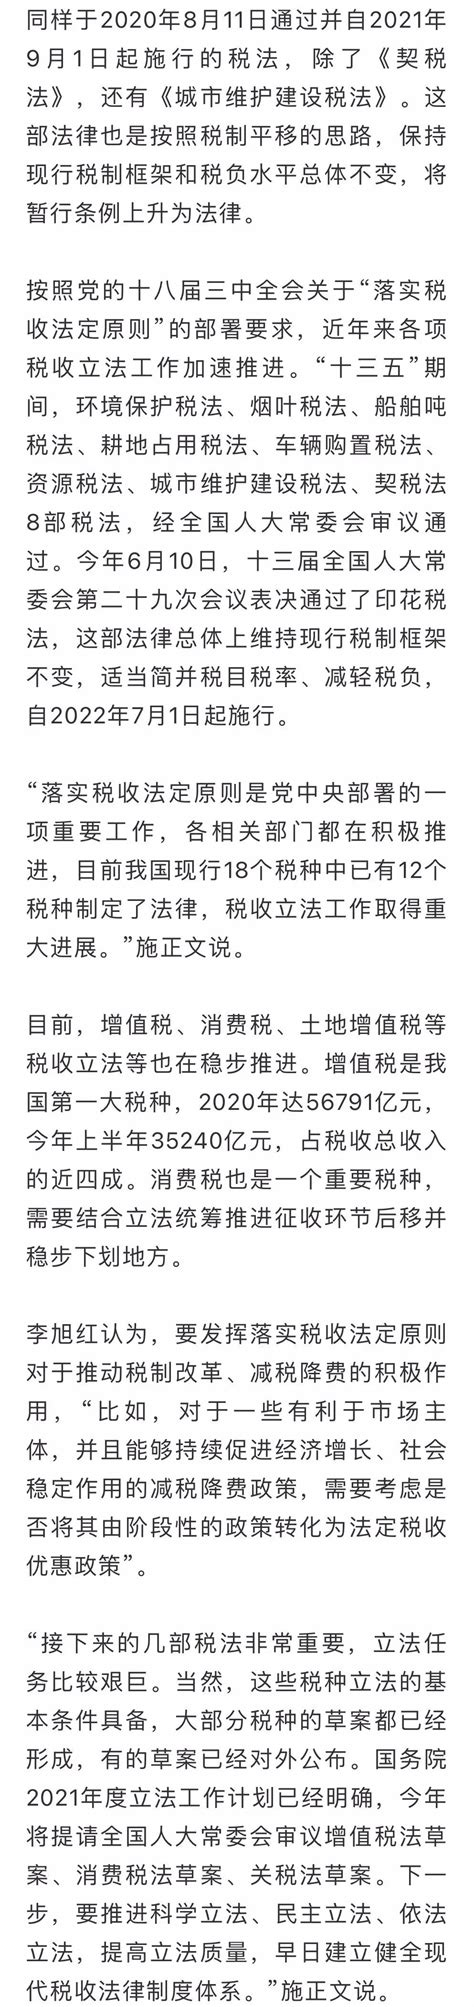 上海2023年8月最新购房税费政策出炉_涵盖契税、增值税、个人所得税...-上海楼盘网